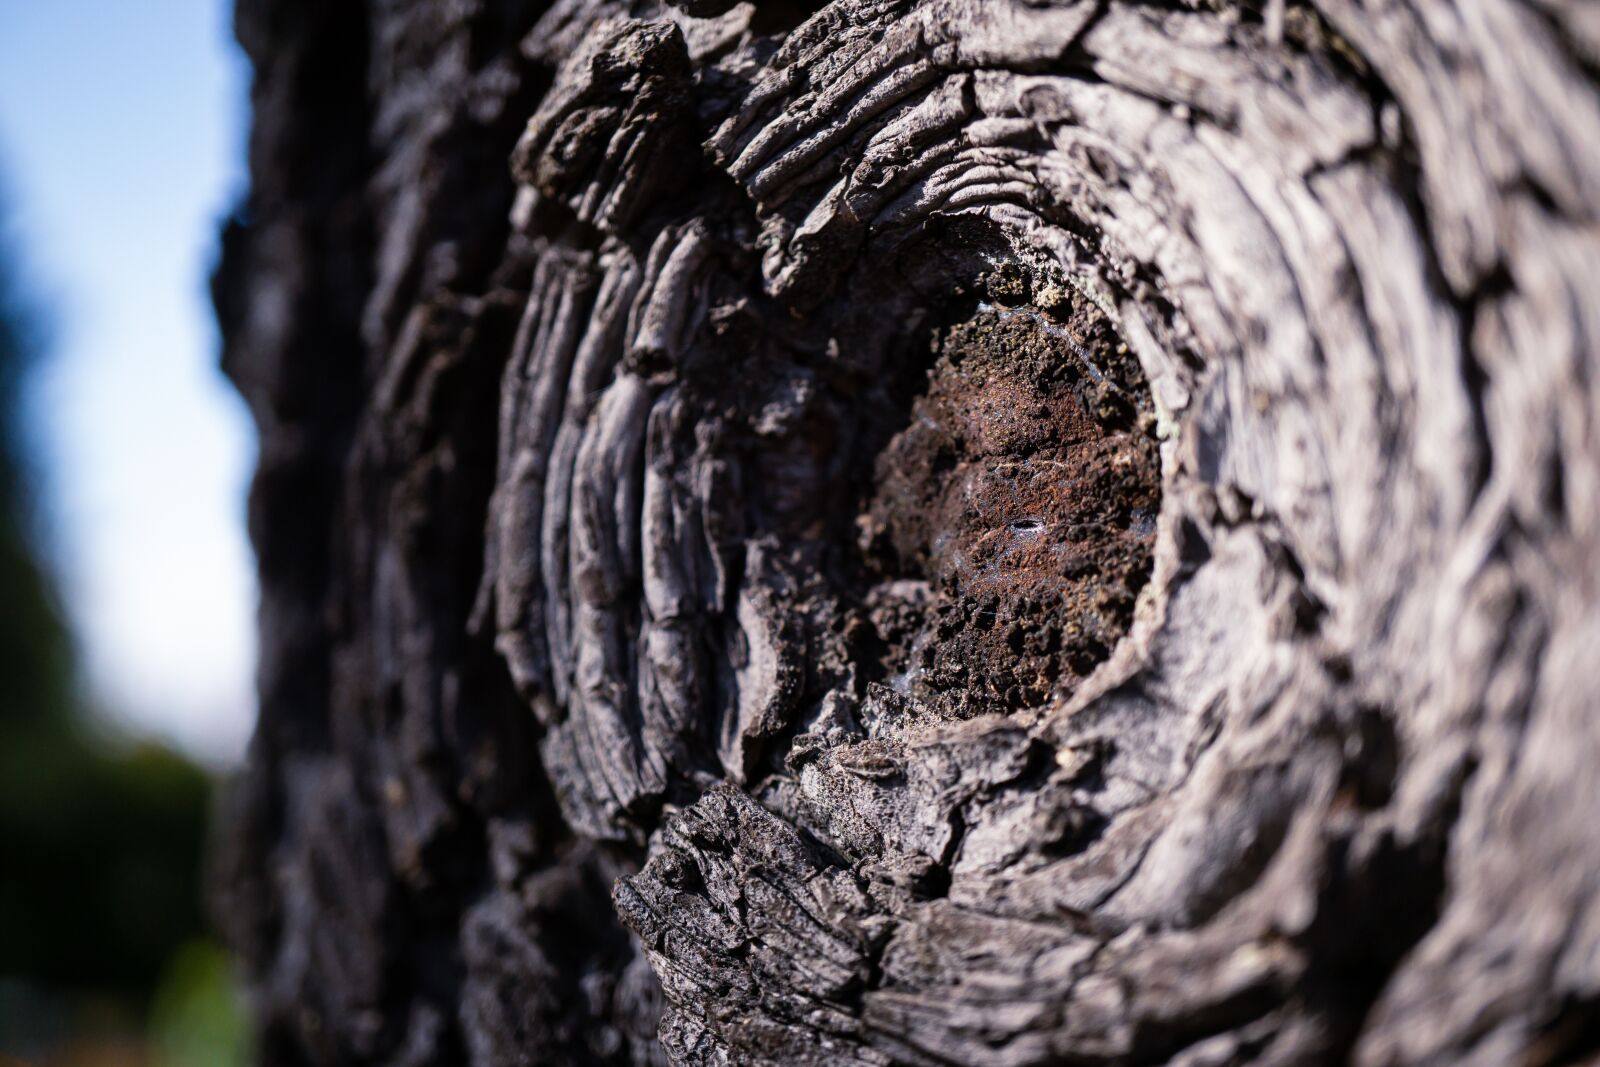 Sony a6000 sample photo. Forest, macro, tree bark photography